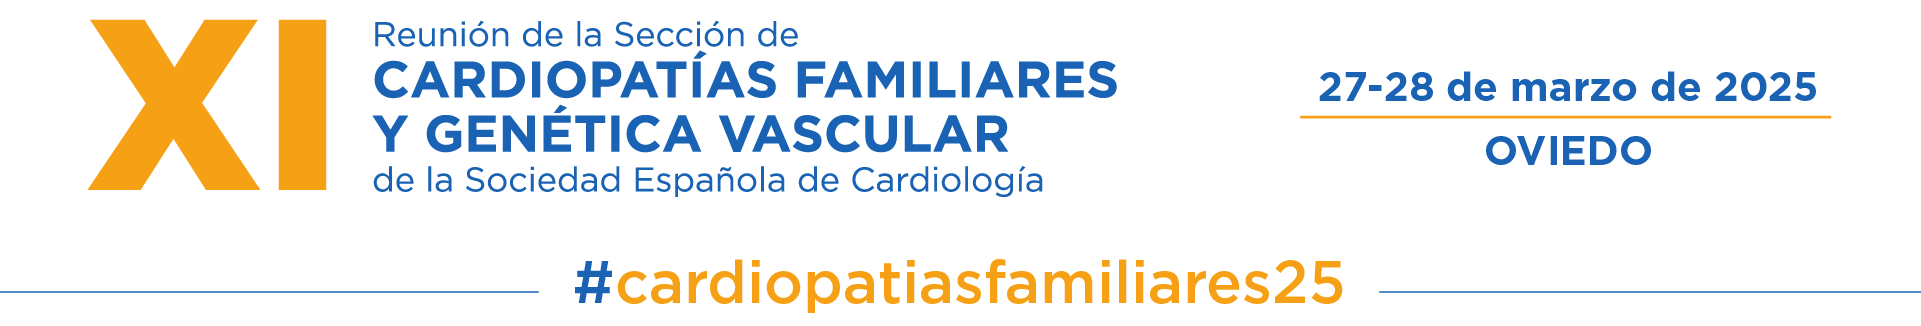 Cardiopatías familiares